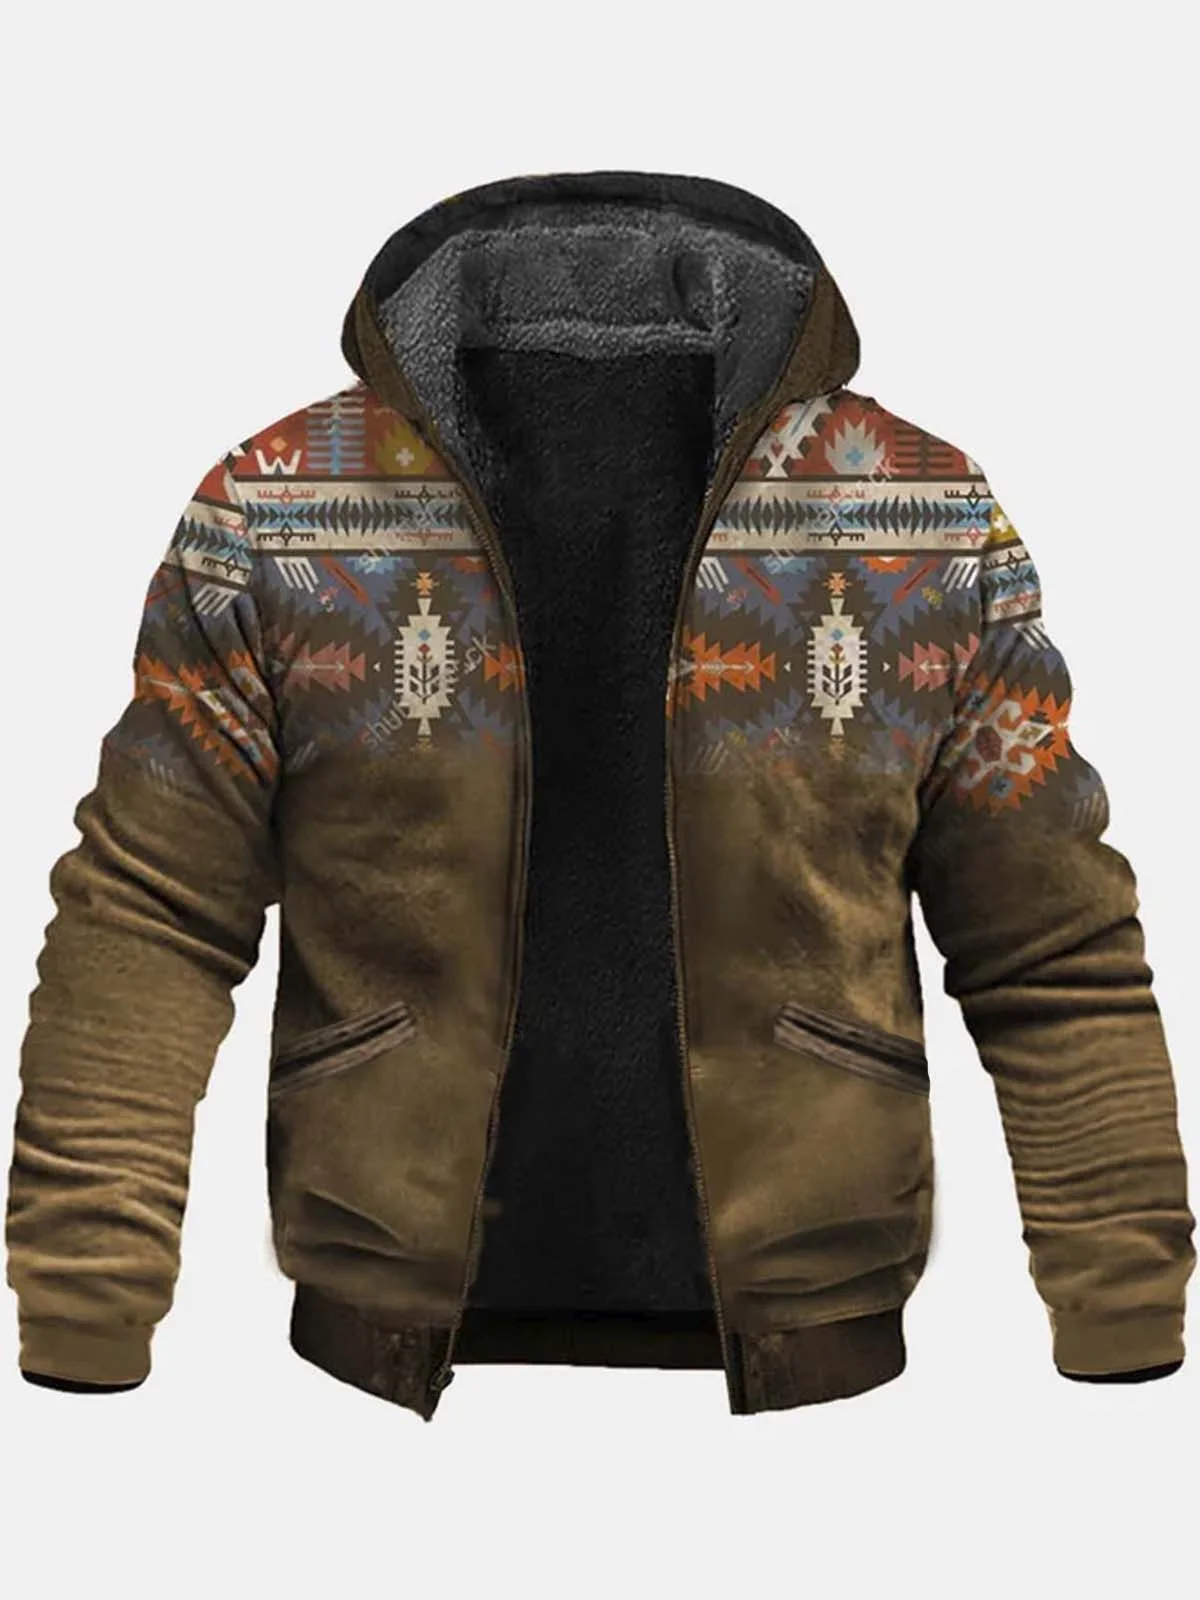 Royaura Vintage Western Brown Aztec Men's Cardigan Hoodies Ethnic Warm Plush Outdoor Zipper Fleece Jacket